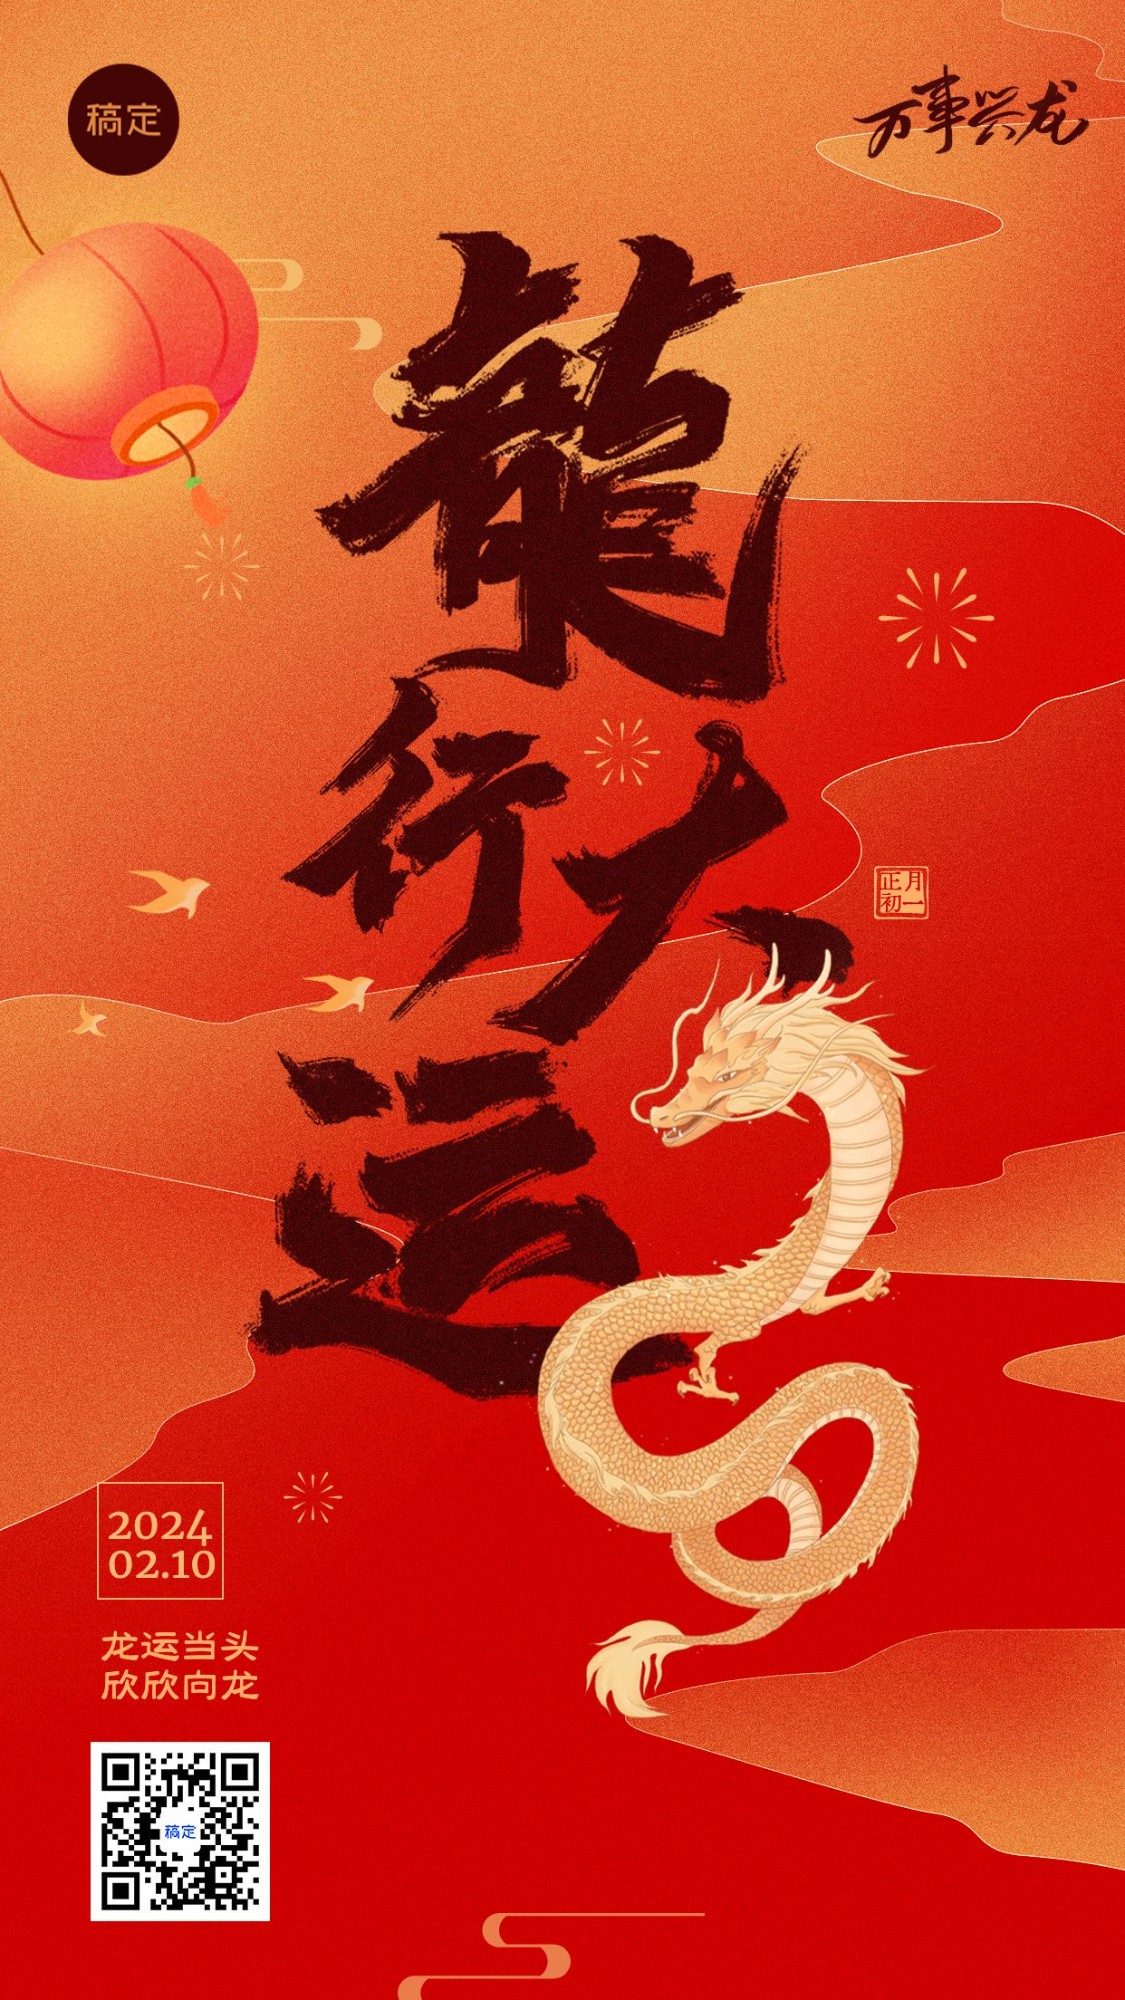 春节新年祝福手机海报